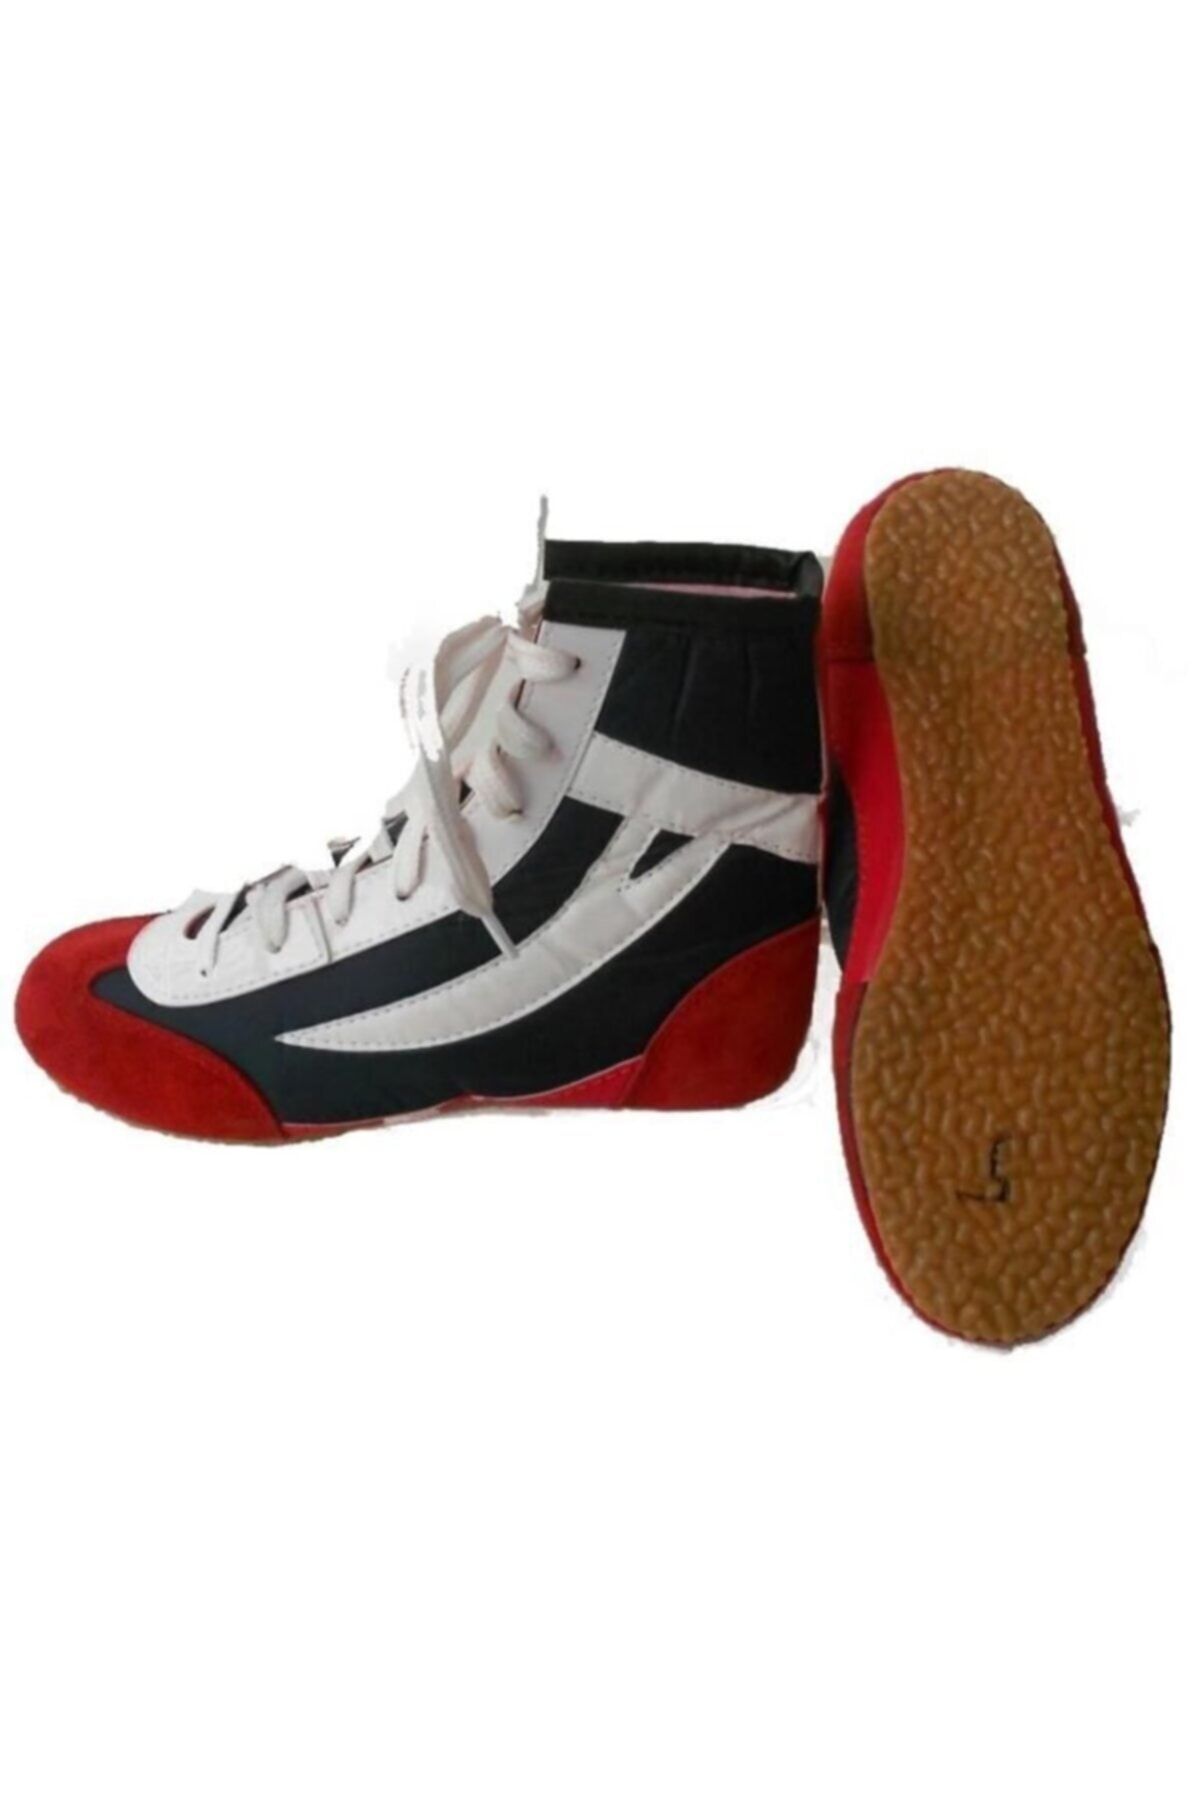 Clifton Güreş Ayakkabısı Boks Ayakkabısı ( 41 Numara )